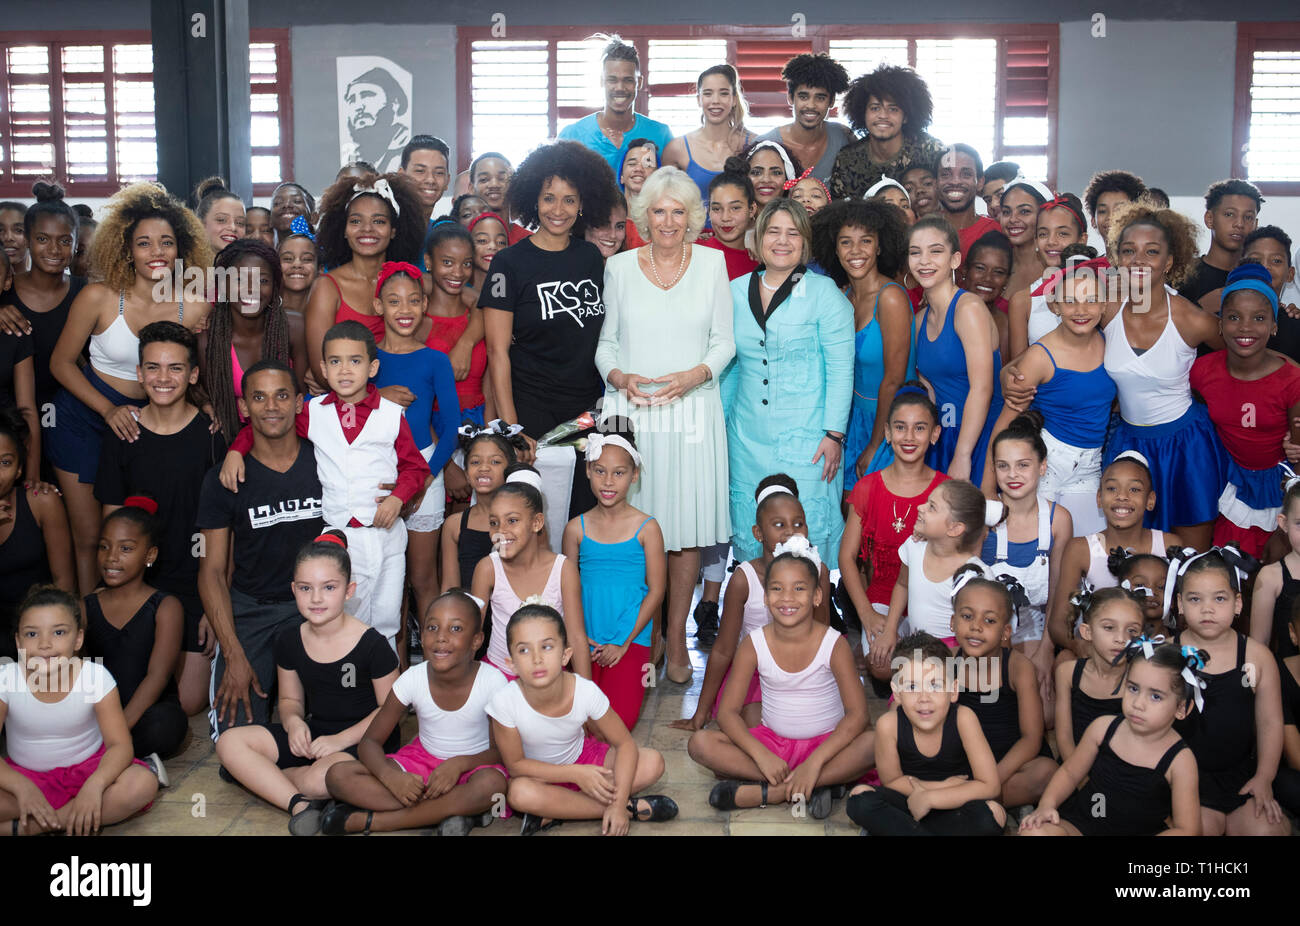 La duchessa di Cornovaglia (centro) durante una visita a una comunità balli di gruppo, a l'Avana, Cuba, come parte di un viaggio storico che celebra i legami culturali tra il Regno Unito e la stato comunista. Foto Stock